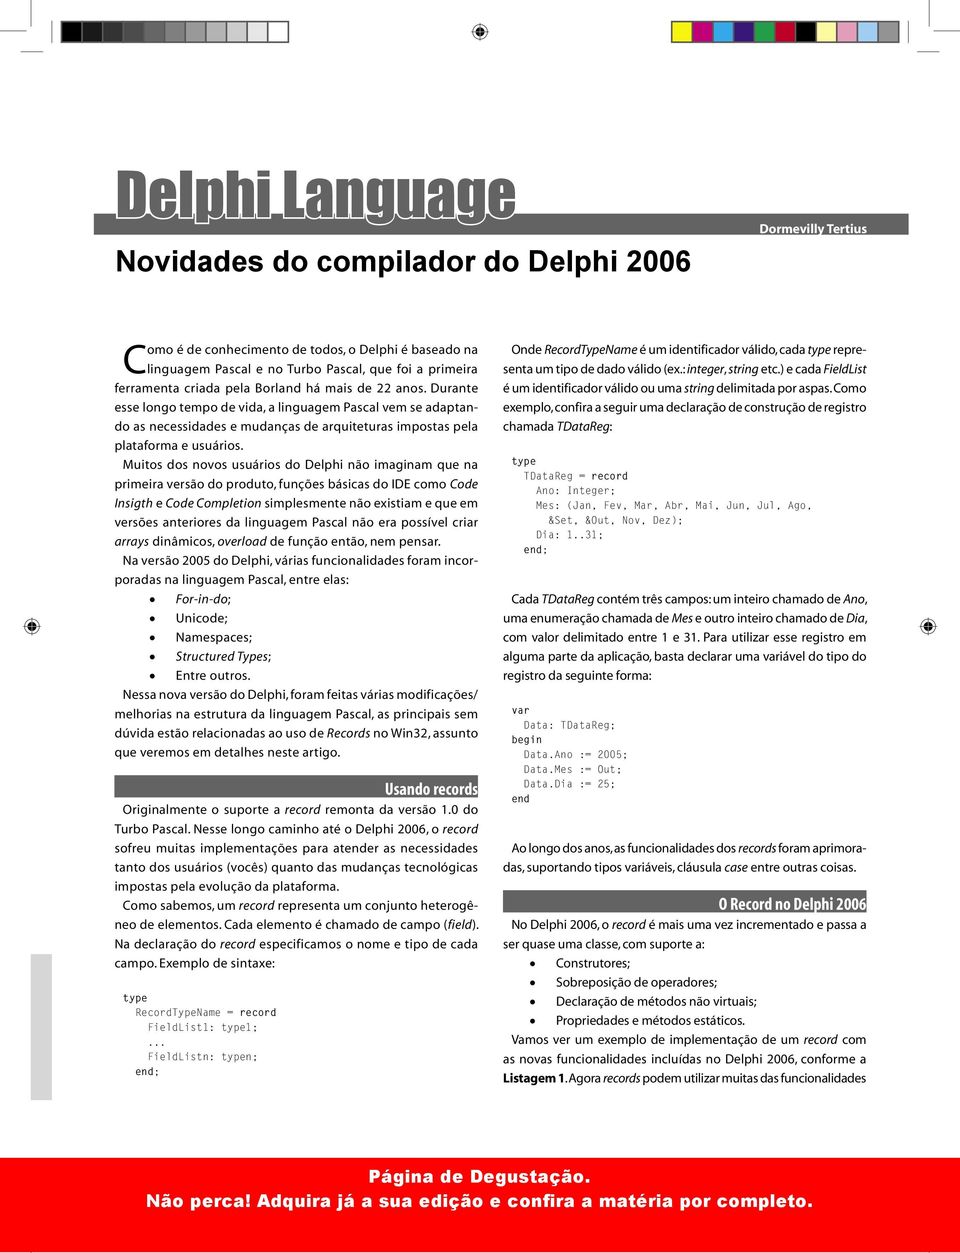 Muitos dos novos usuários do Delphi não imaginam que na primeira versão do produto, funções básicas do IDE como Code Insigth e Code Completion simplesmente não existiam e que em versões anteriores da